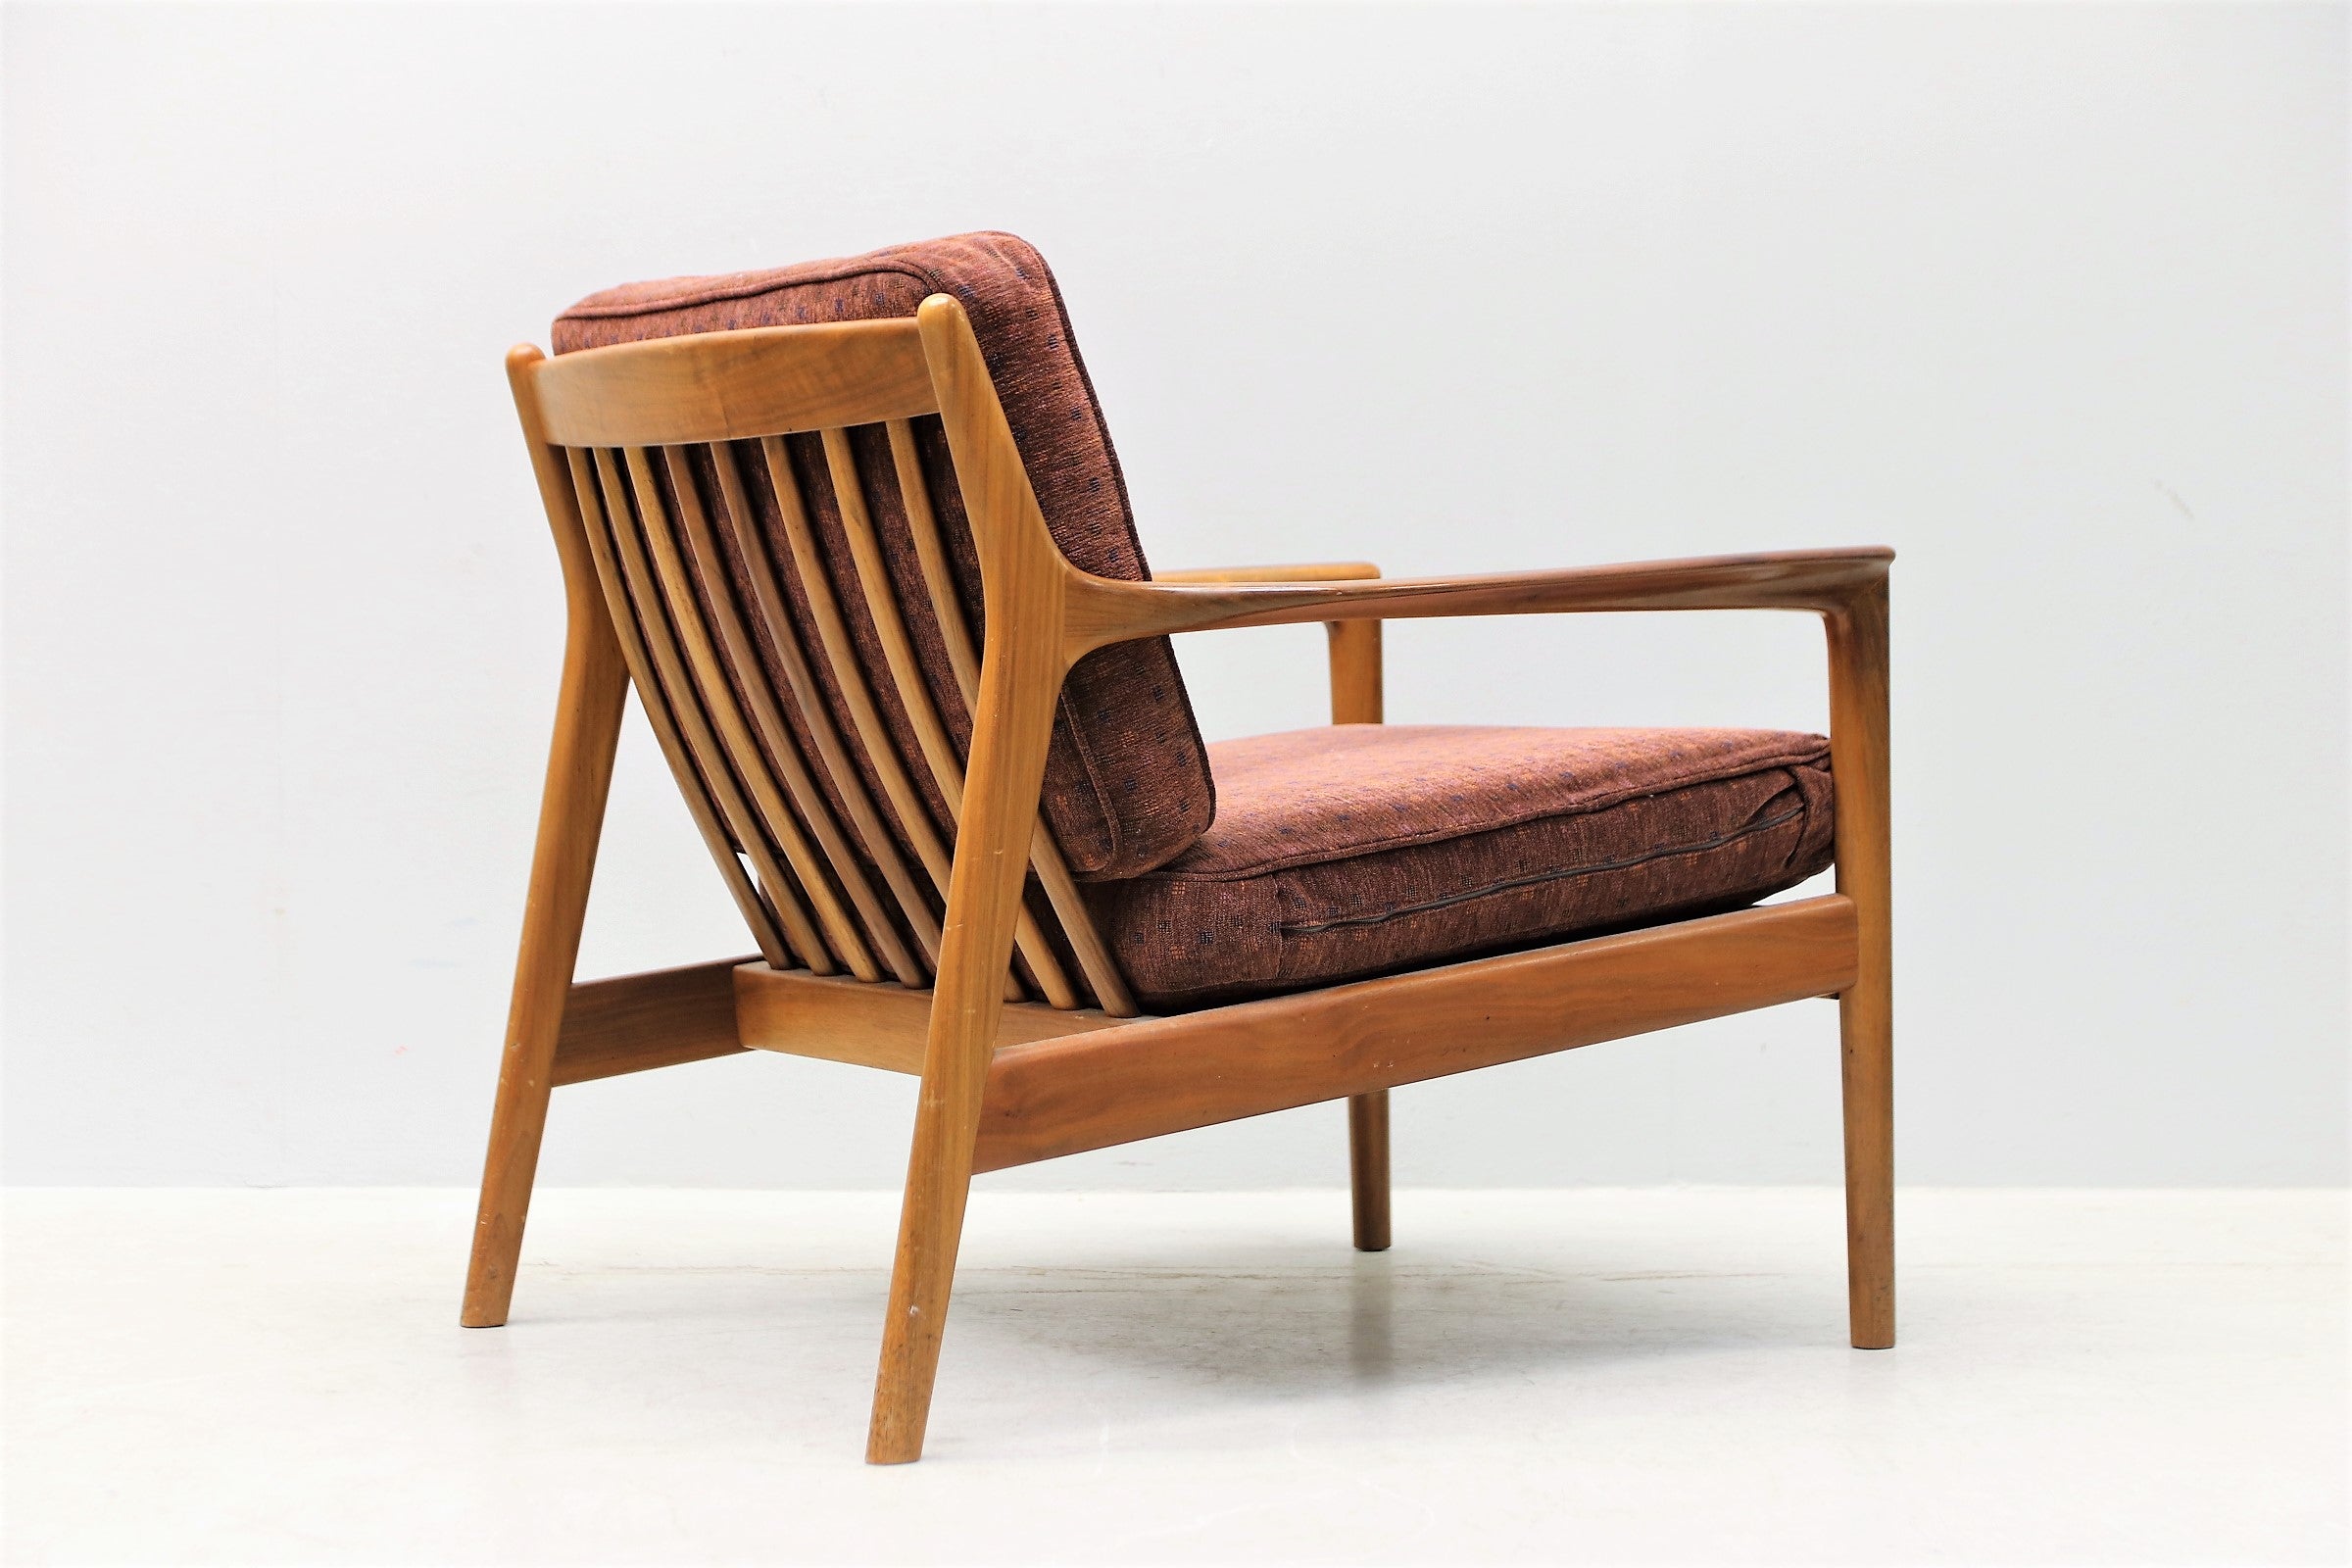 "USA-75" Armchair by Folke Ohlsson for DUX, Inc.